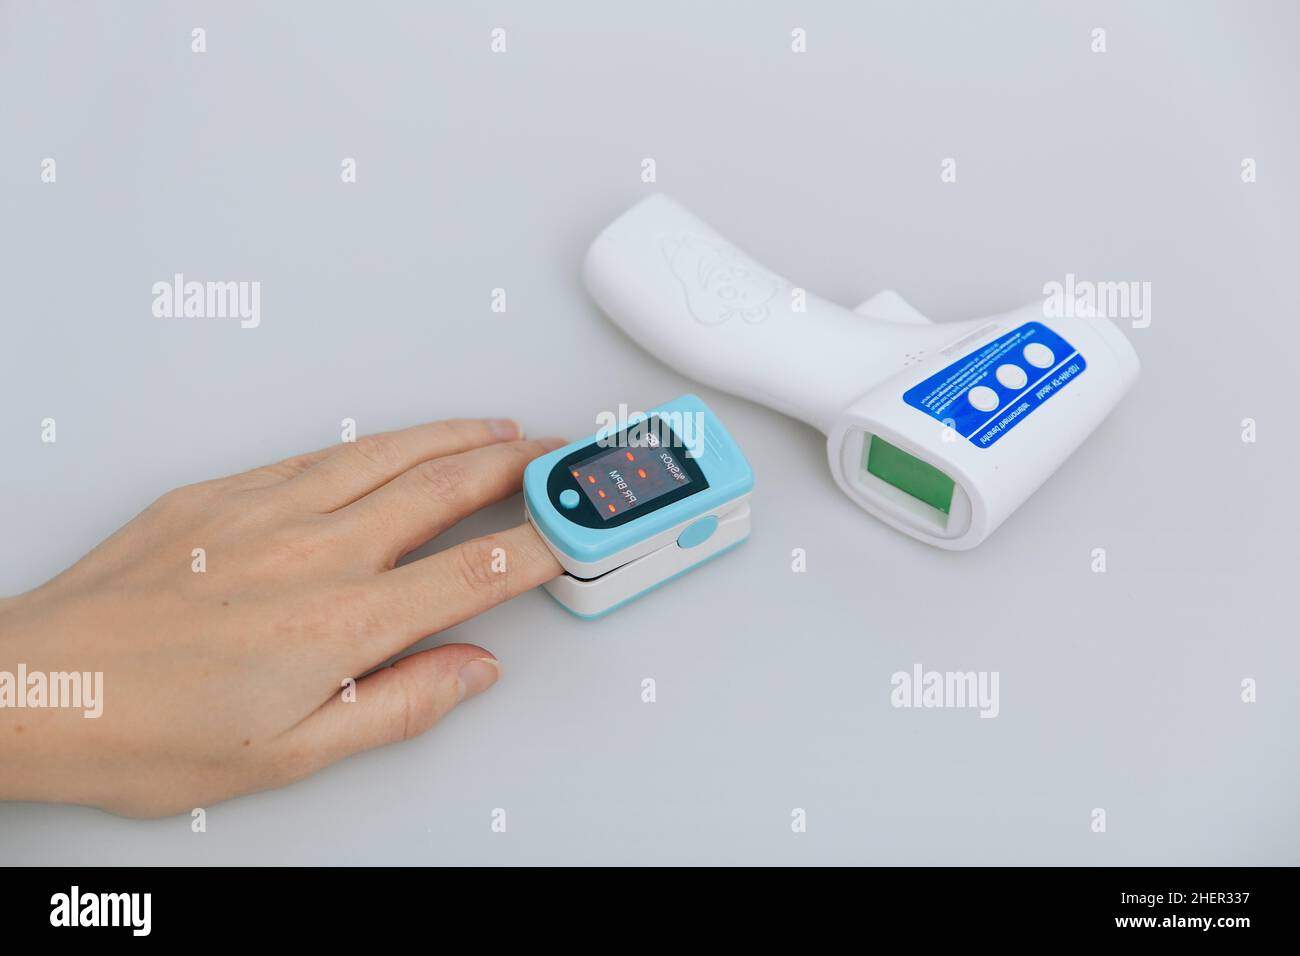 Pulsoximeter und Thermometerpistole auf weißem Hintergrund. Messung der Sauerstoffsättigung, der Pulsfrequenz und des Sauerstoffgehalts. Isometrisches Infrarot-Thermometer Stockfoto